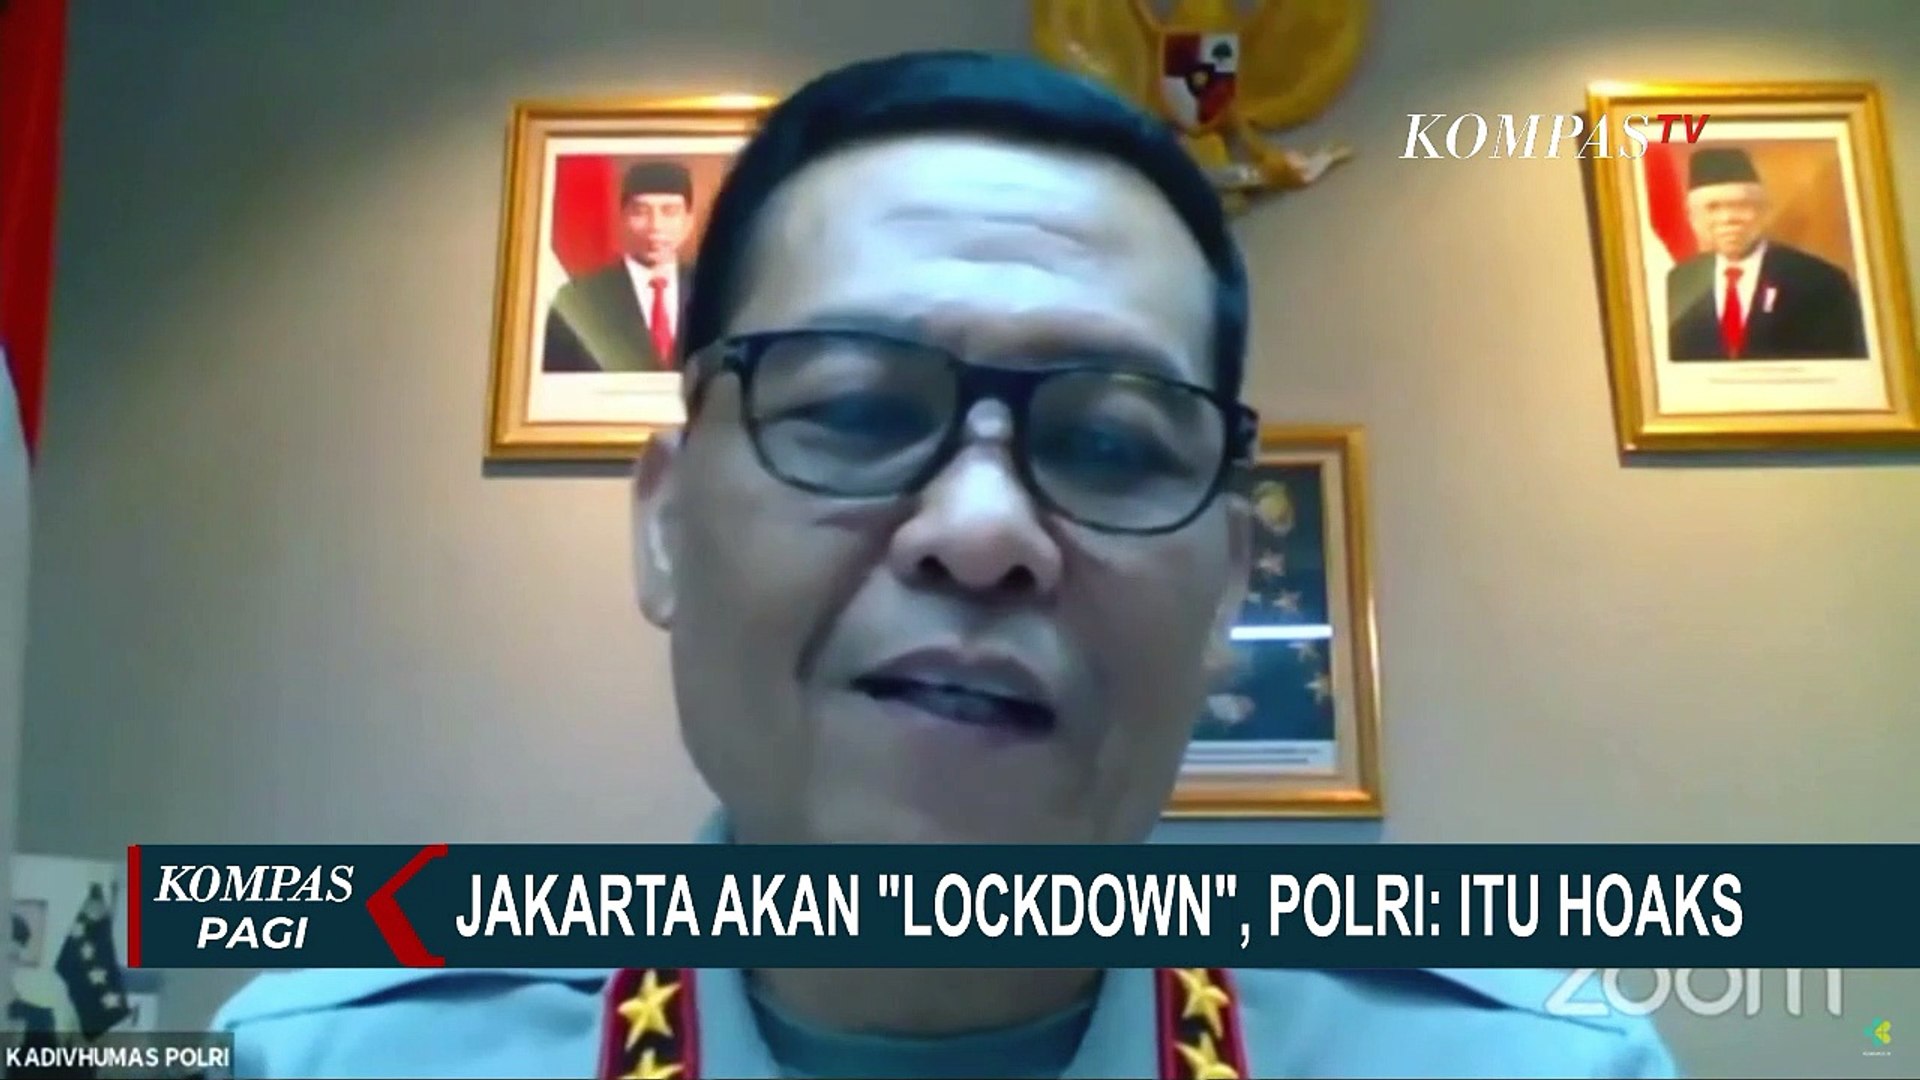 ⁣Polri: Jakarta Lockdown 12-15 Februari adalah Hoaks